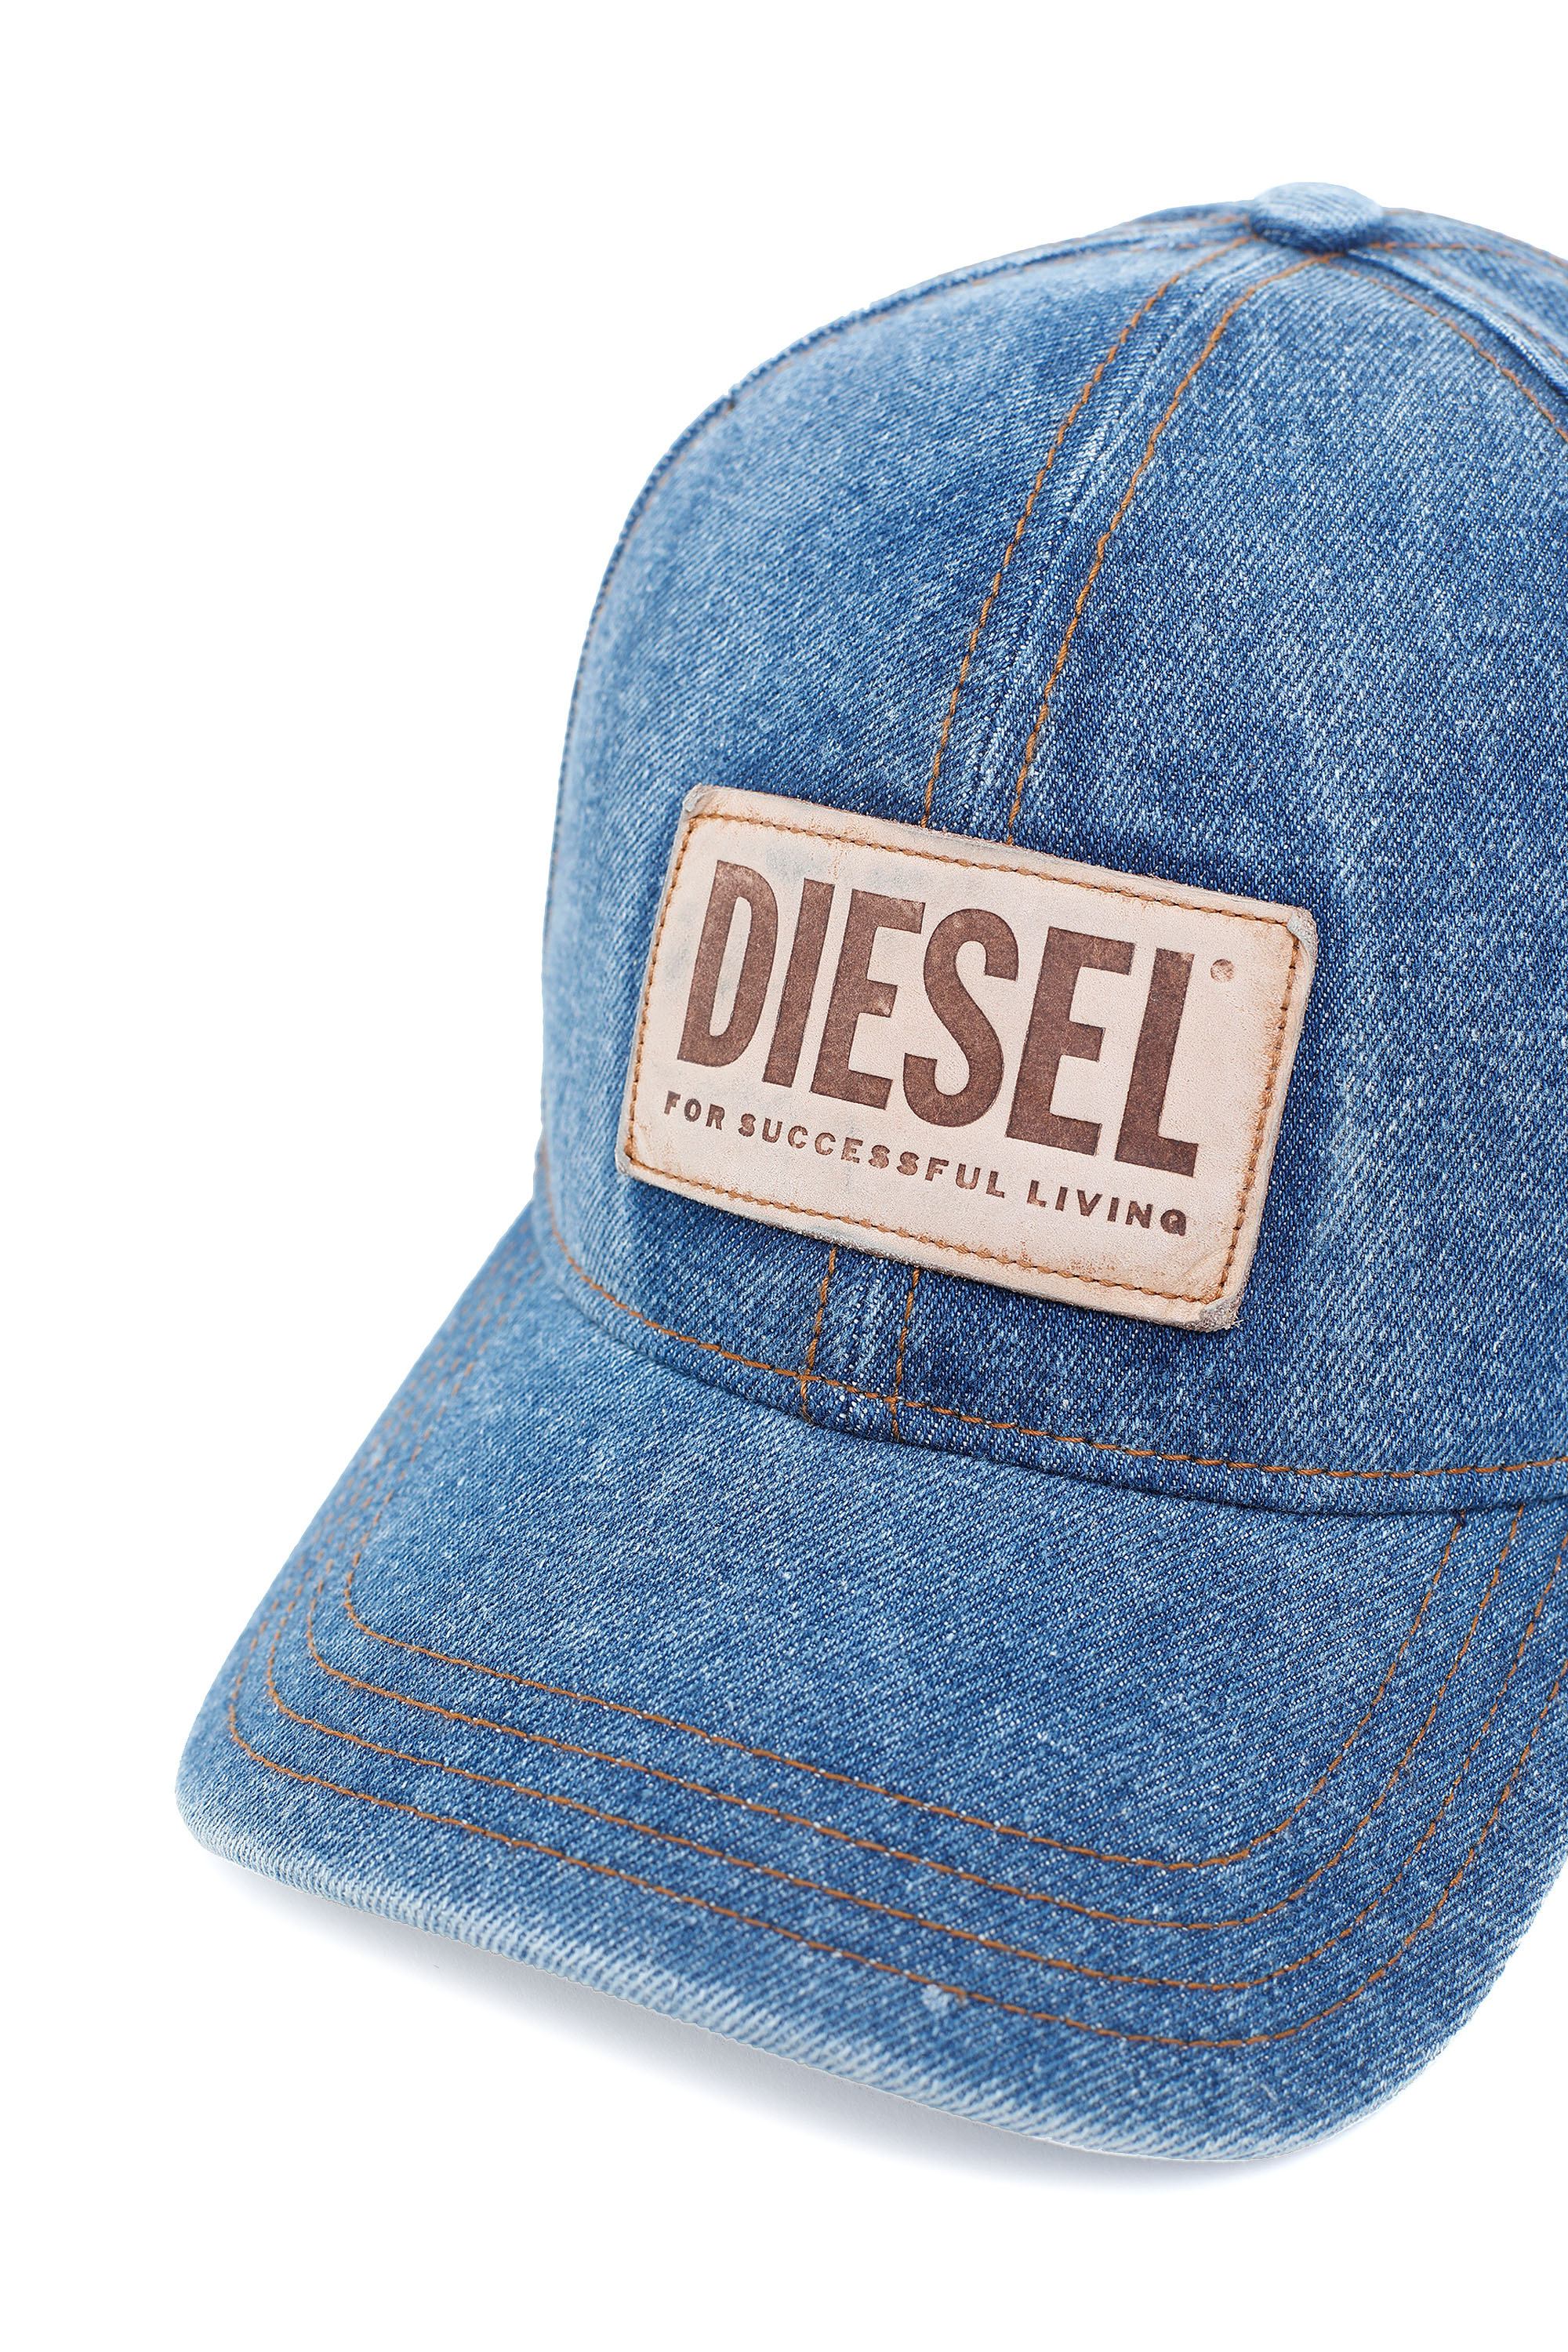 Diesel - C-DEN, Blue - Image 3